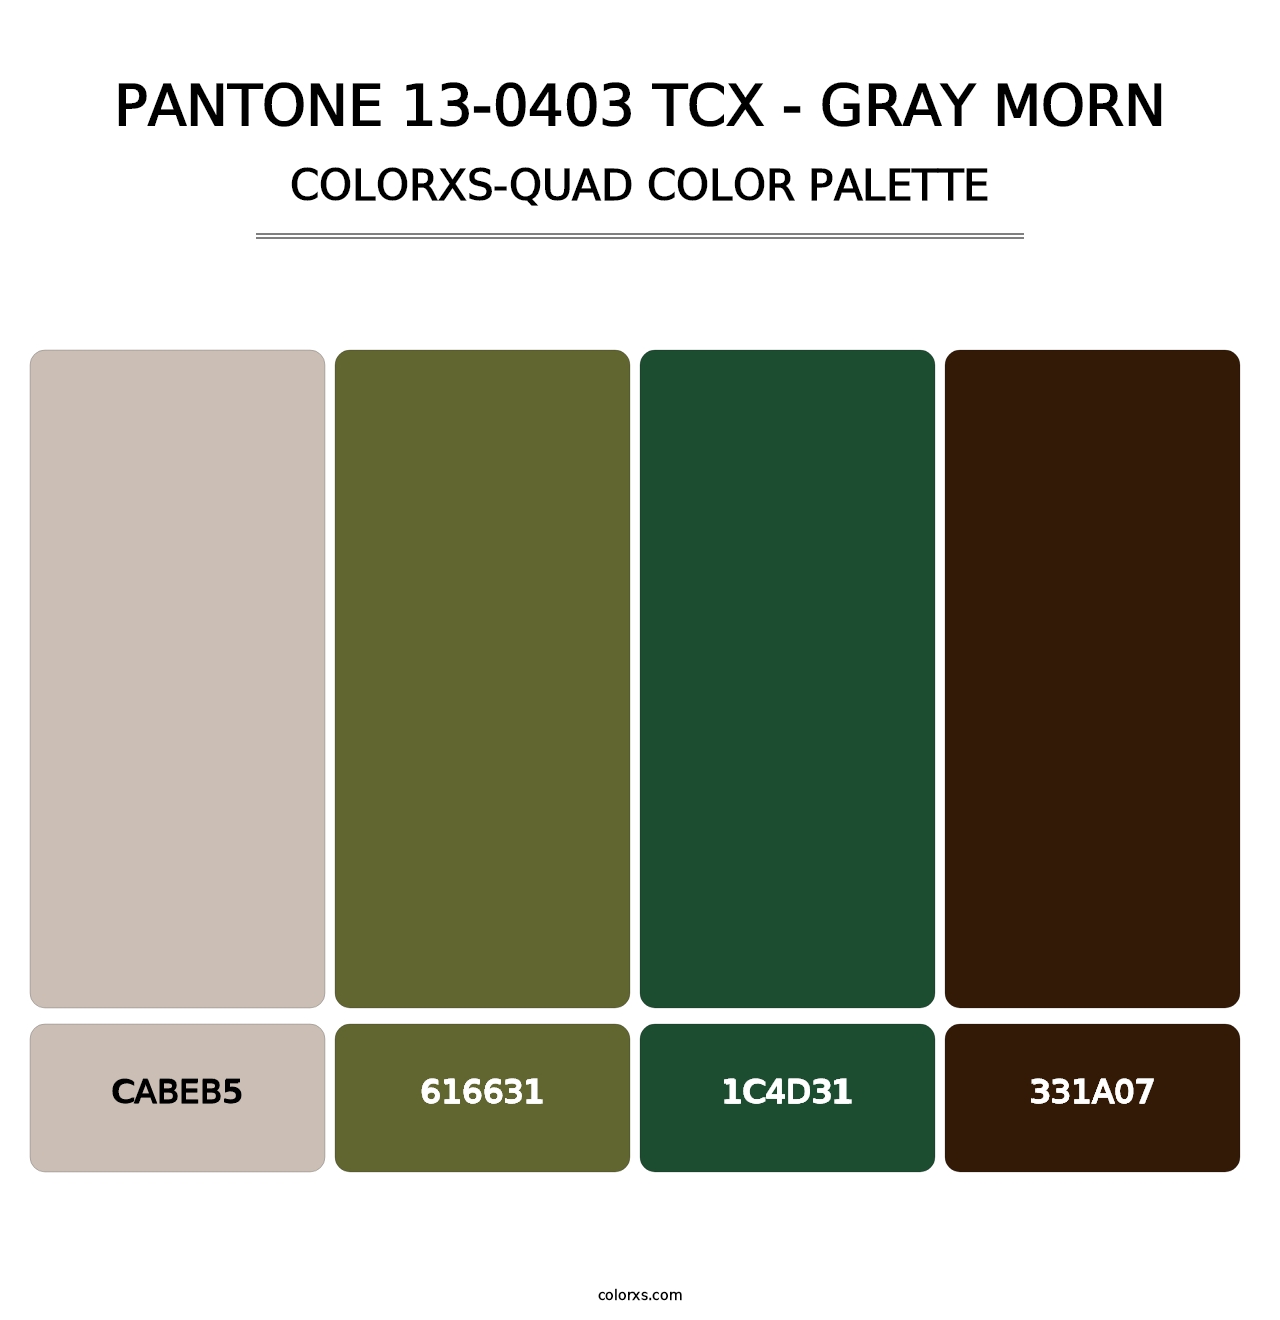 PANTONE 13-0403 TCX - Gray Morn - Colorxs Quad Palette